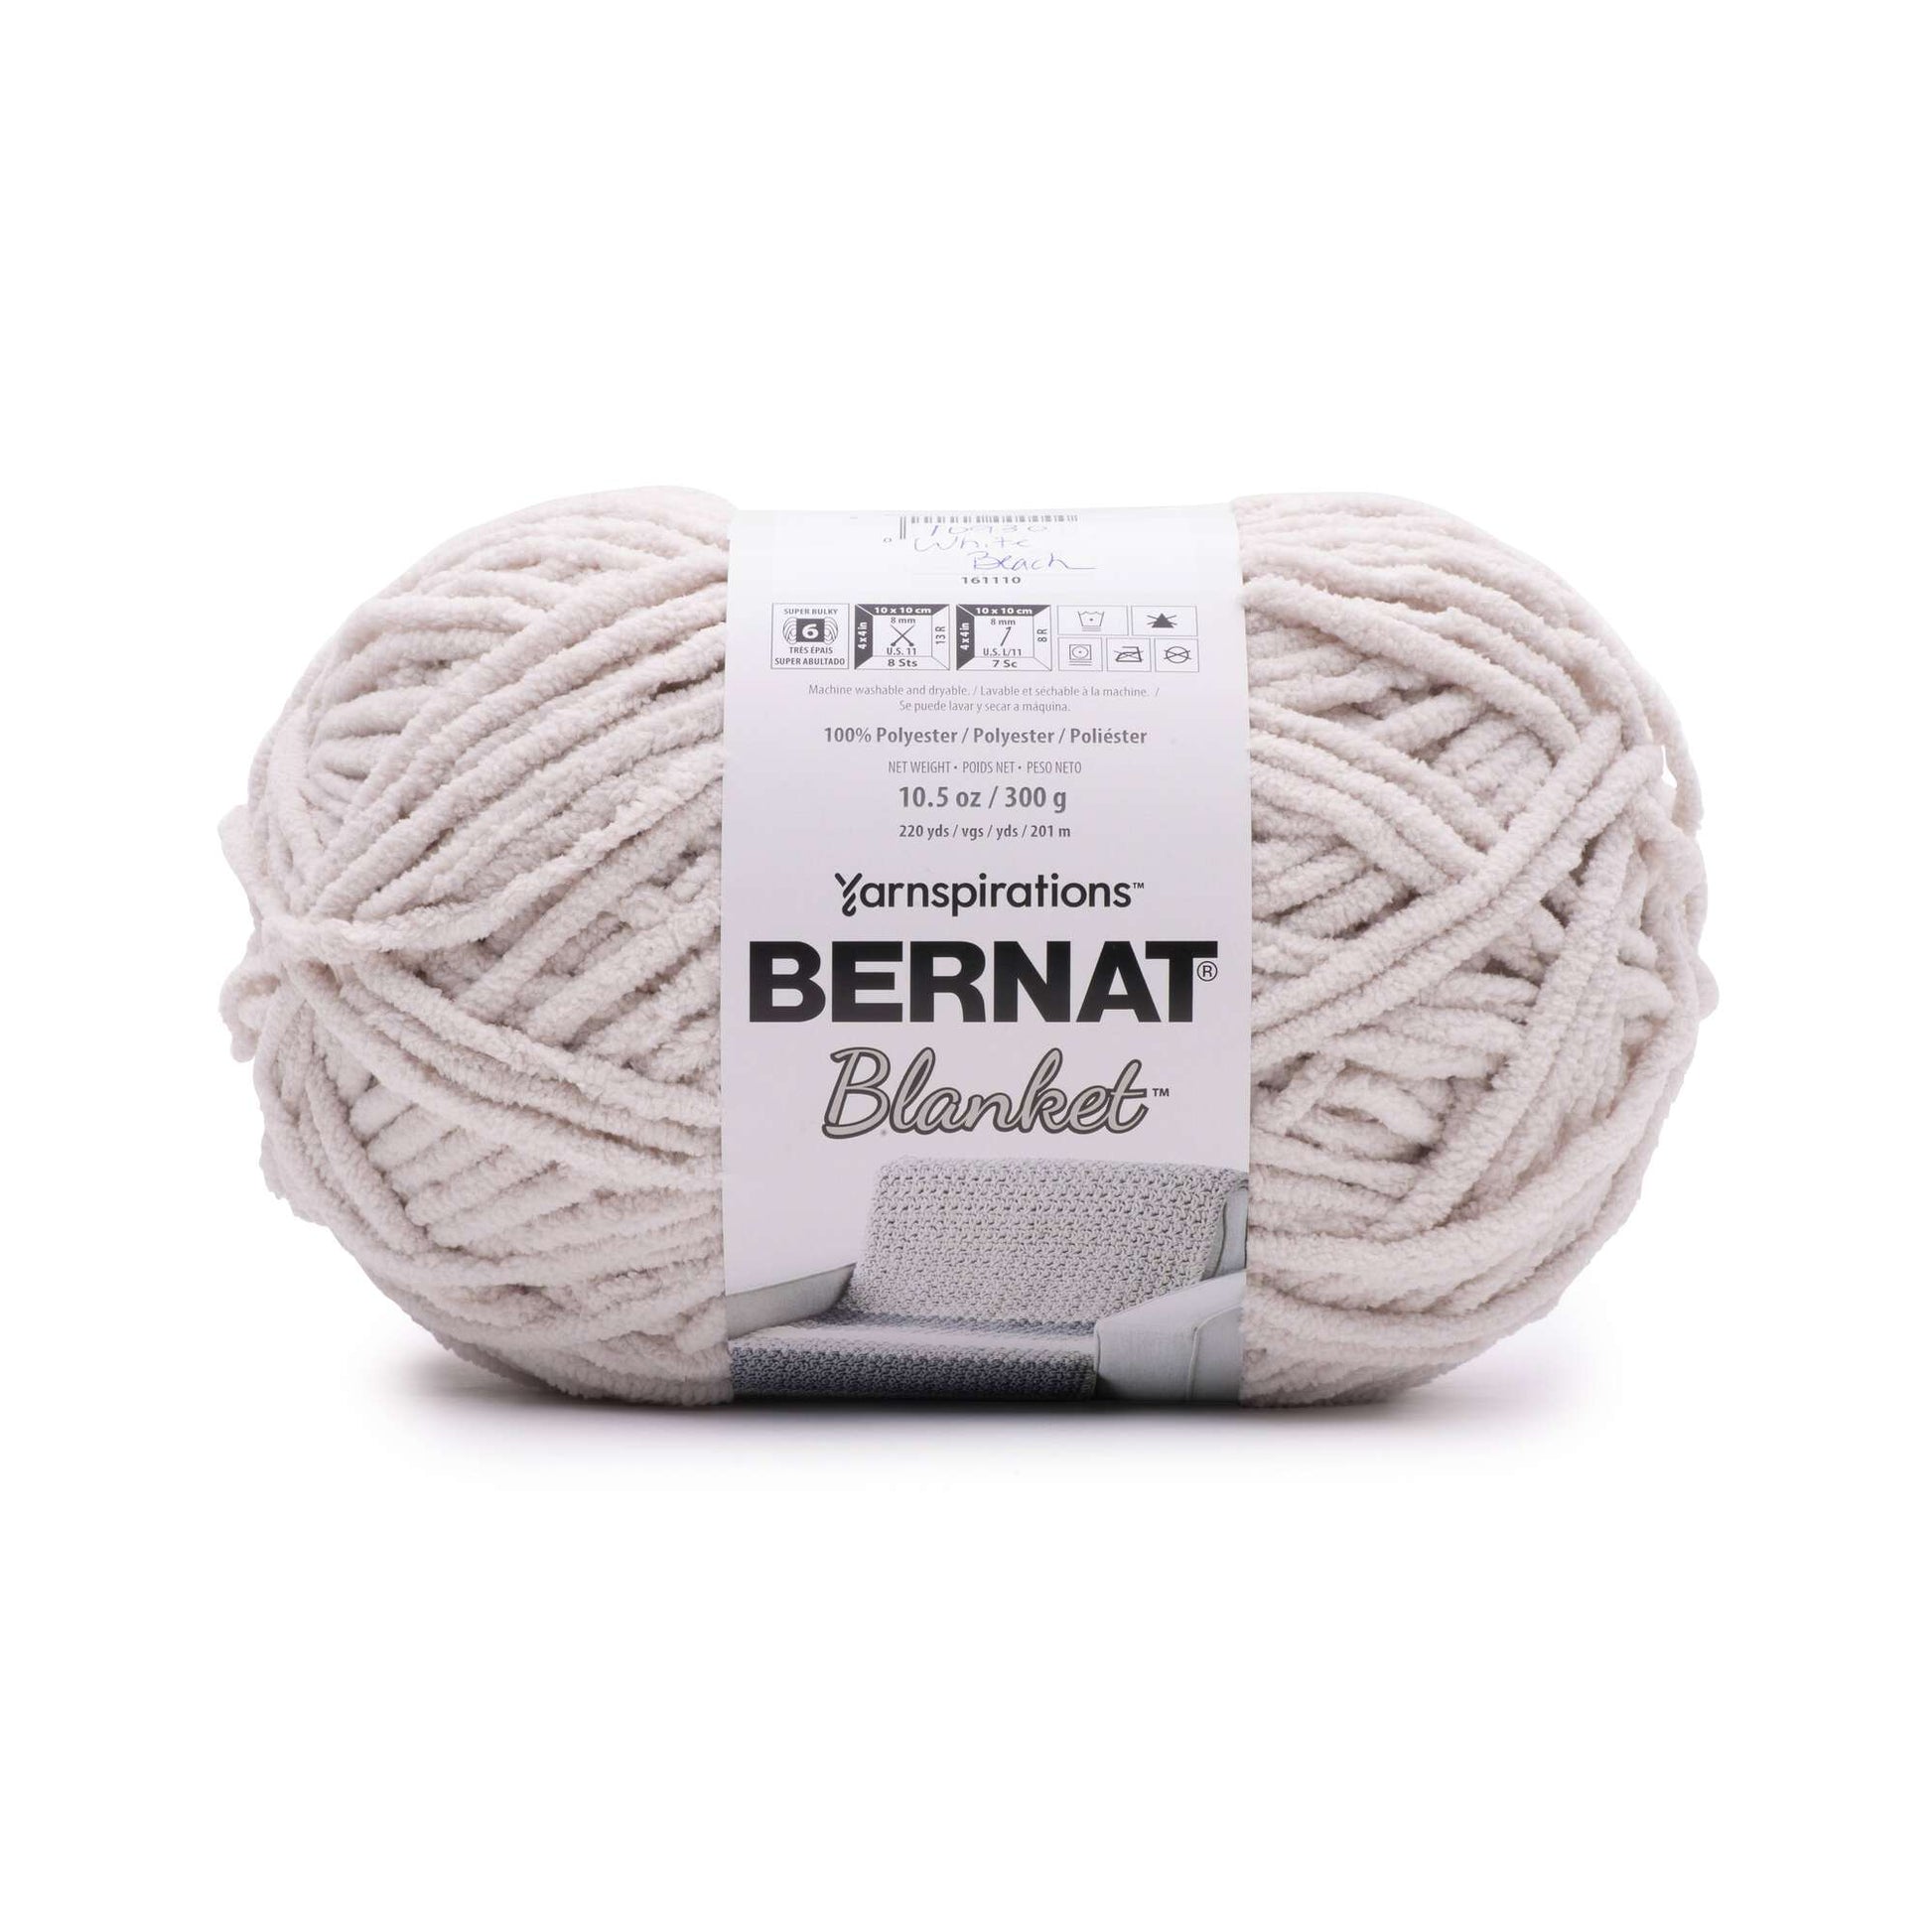 Bernat Blanket Misty Green Yarn 2 Pack of 300g/10.5oz Polyester 6 Super  Bulky - 220 Yards Knitting/Crochet | Michaels